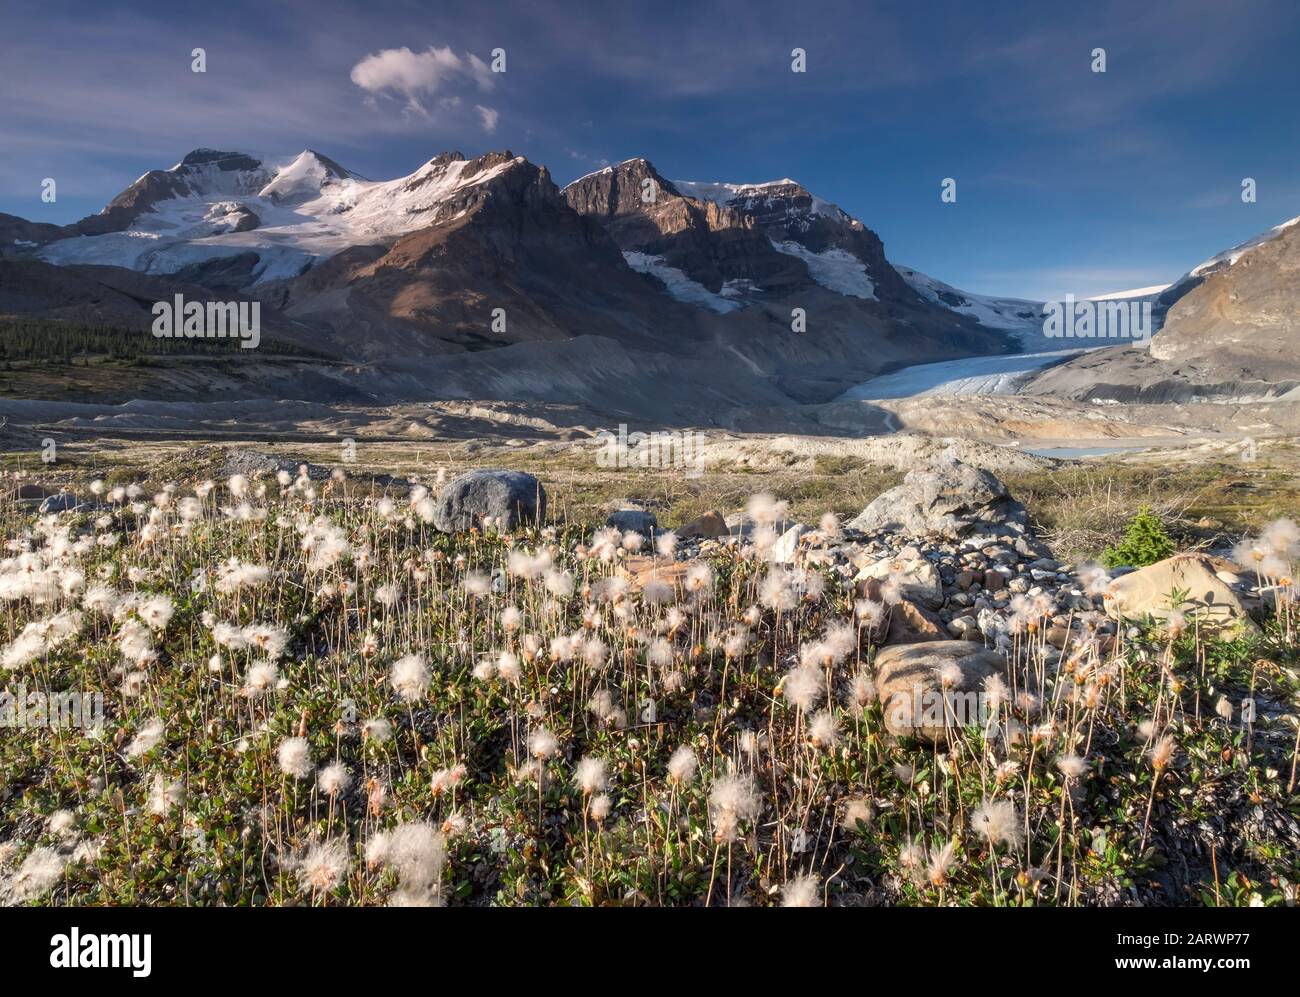 Baumwollgras und Moränen unterhalb des Athabasca-Gletschers, unterstützt durch Mount Athabasca & Mount Andromeda, Jasper National Park, Canadian Rockies, Kanada Stockfoto